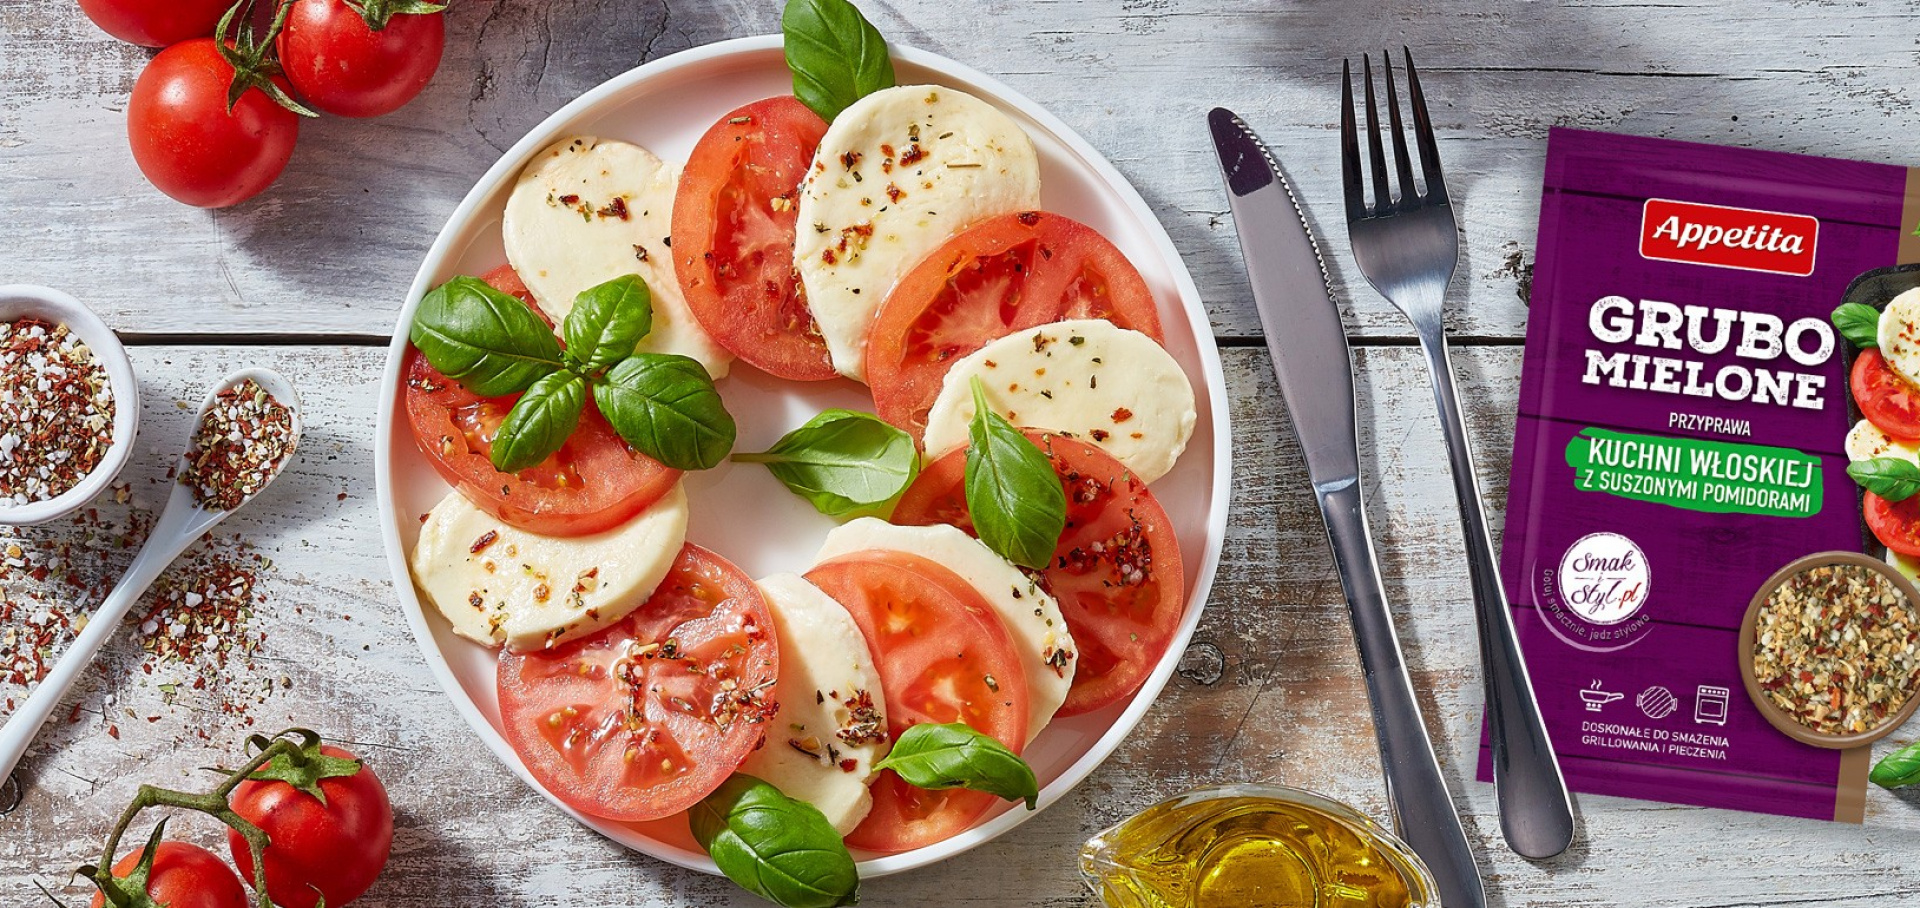 Przyprawa kuchni włoskiej z suszonymi pomidorami